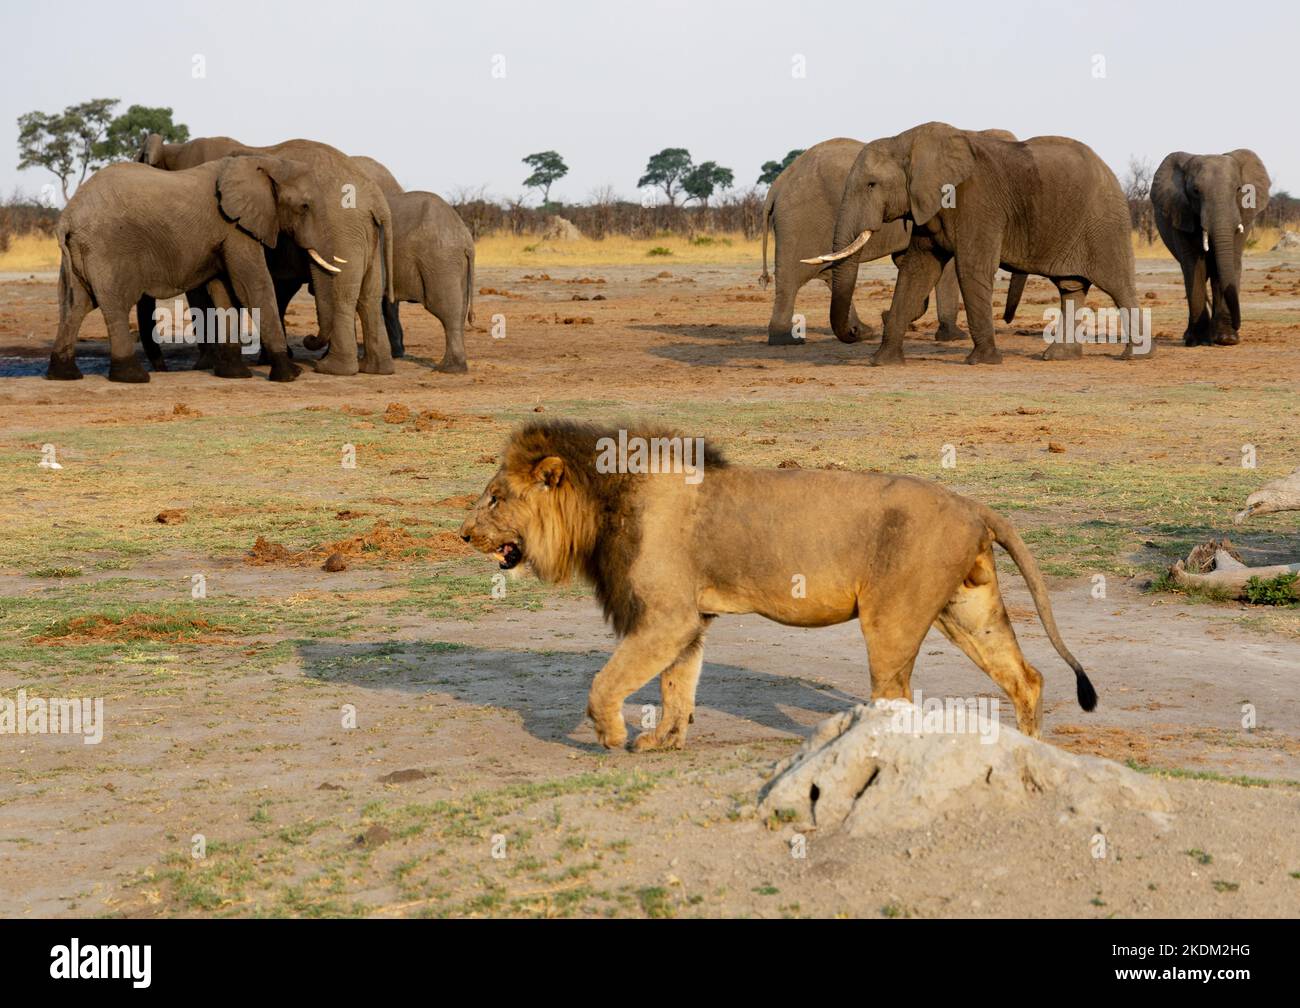 Un lion mâle adulte, Apex Predator, passant devant des éléphants; parc national de Chobe, Botswana, Afrique. Scène de la faune africaine. Banque D'Images